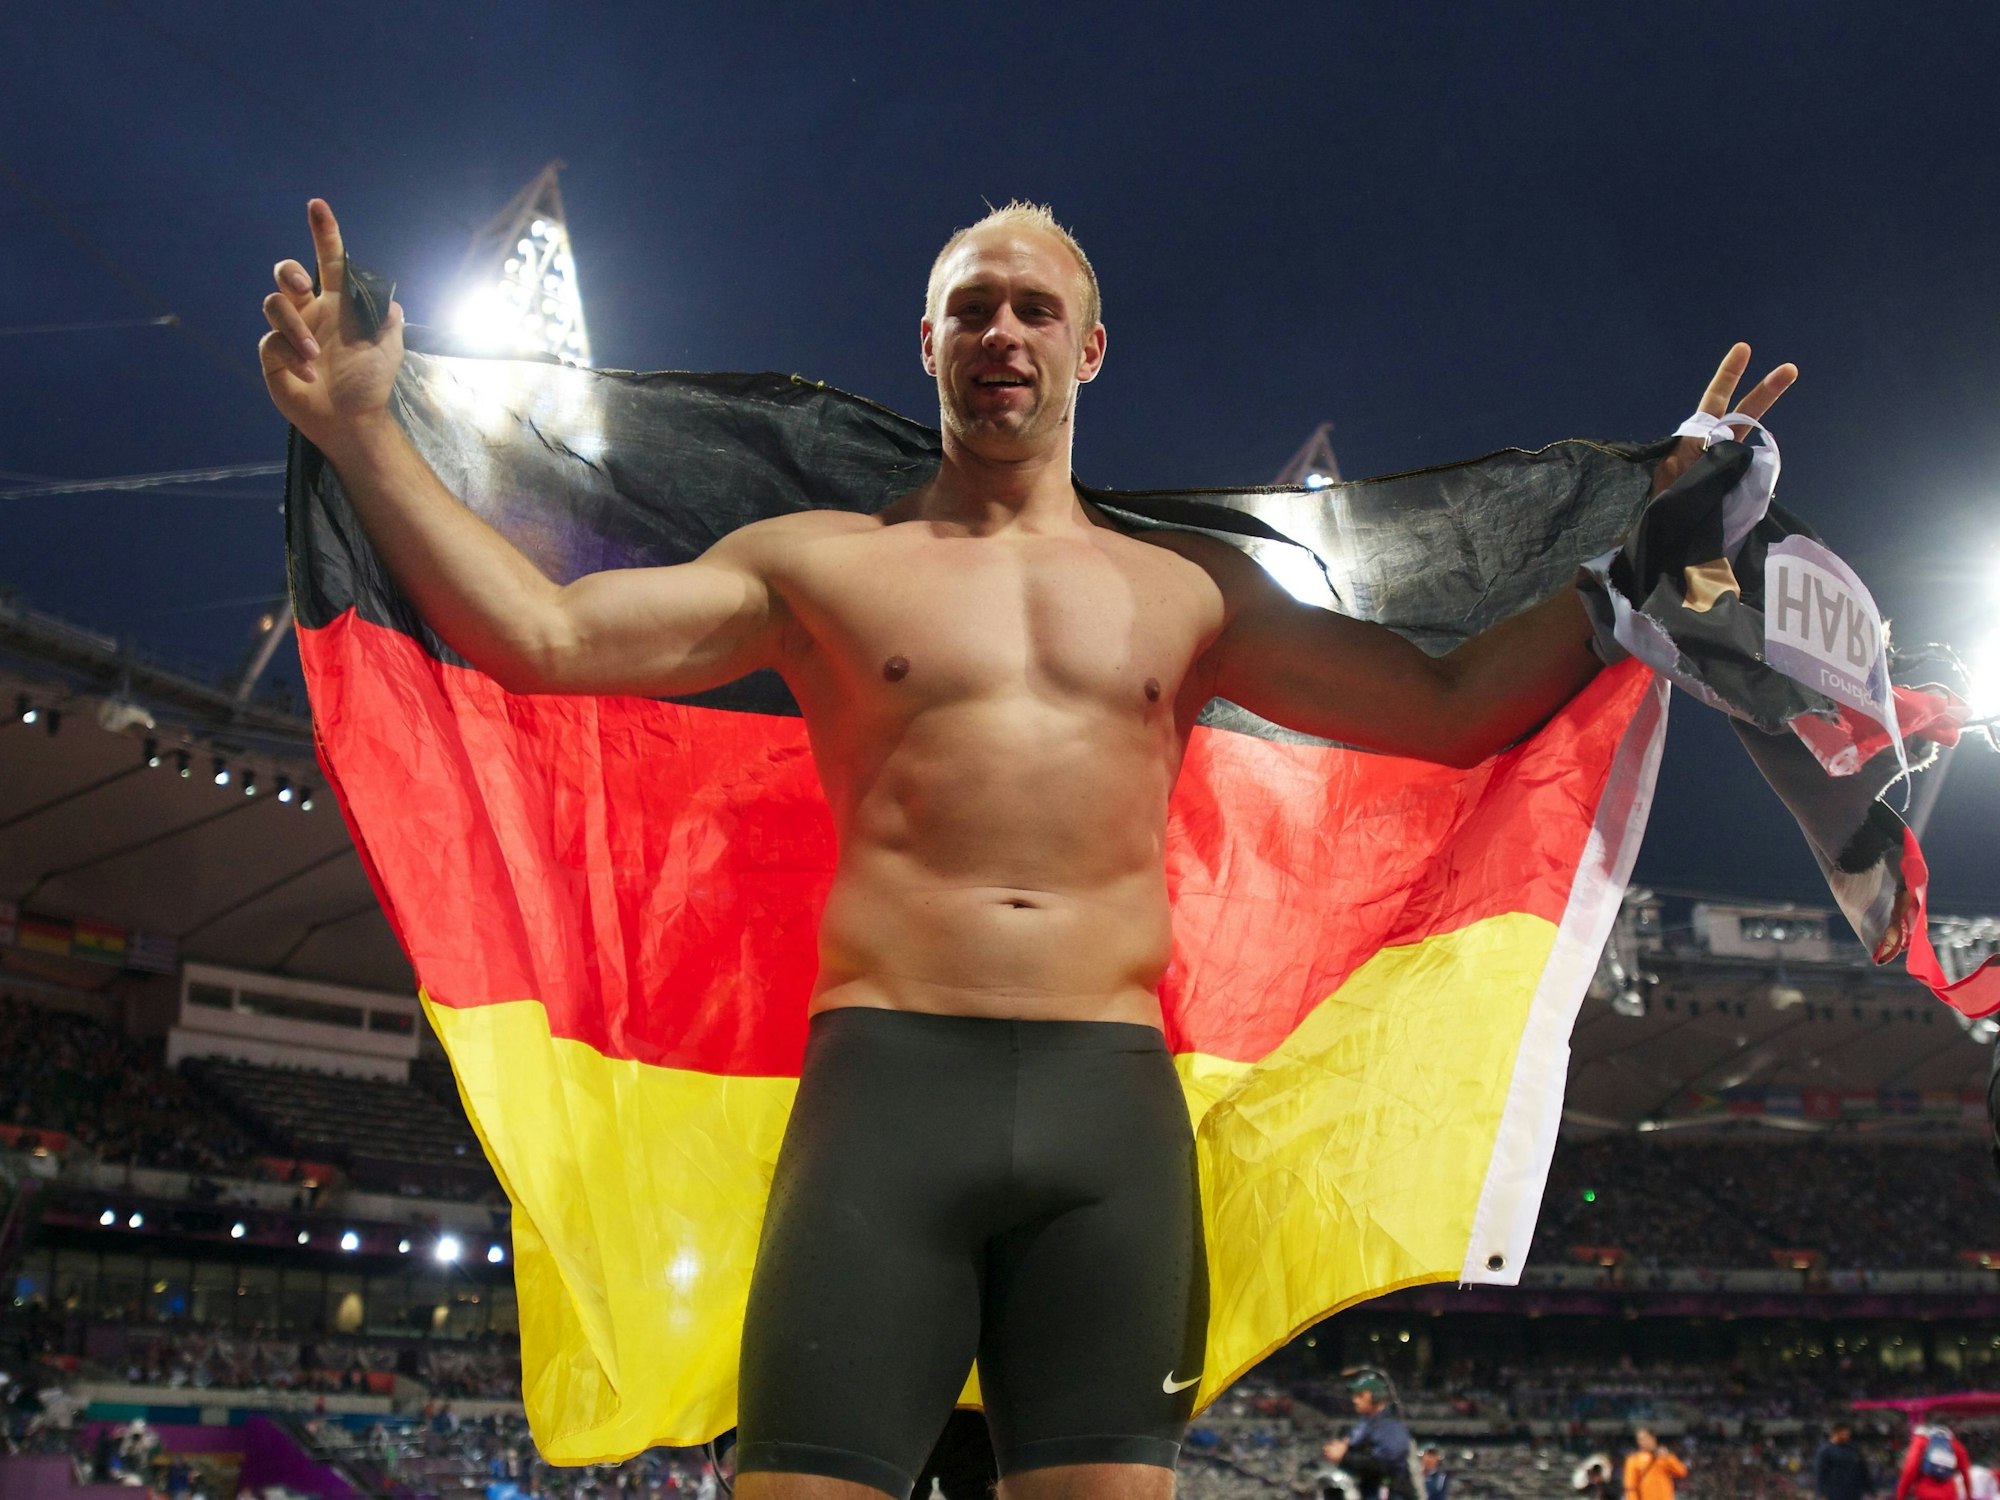 Robert Harting feiert oberkörperfrei und mit Deutschlandflagge in der Hand seine Goldmedaille im Diskus.